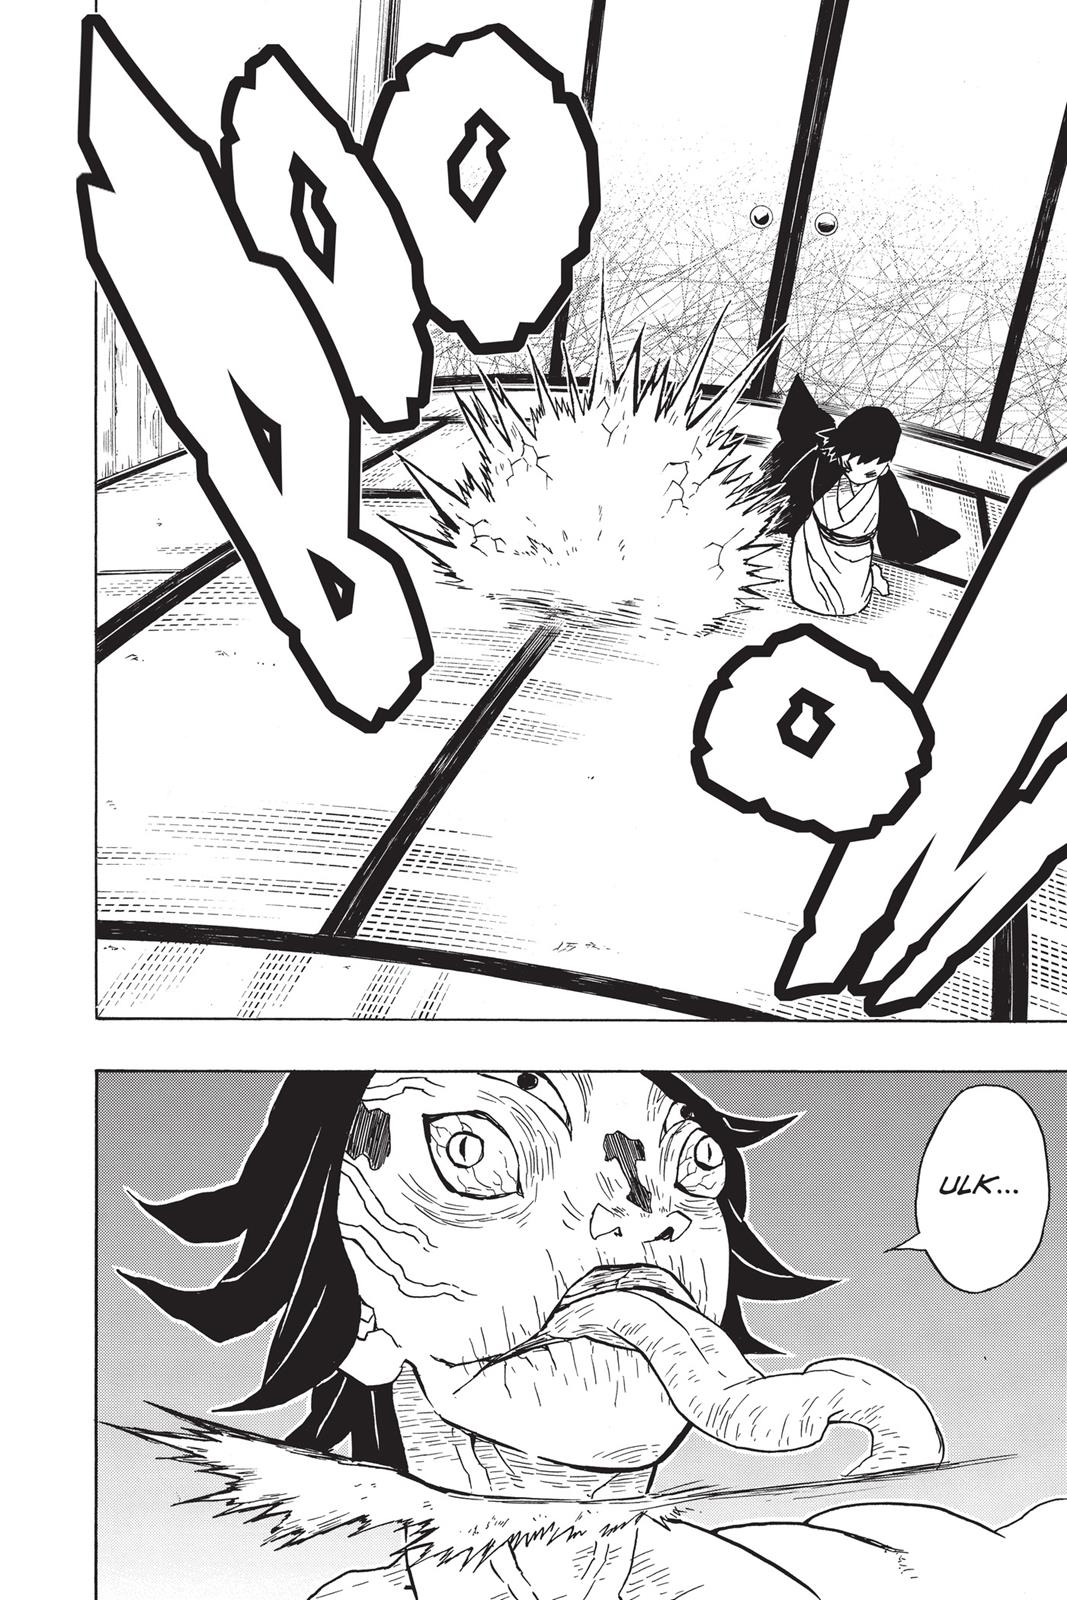 Demon Slayer Manga Manga Chapter - 23 - image 8